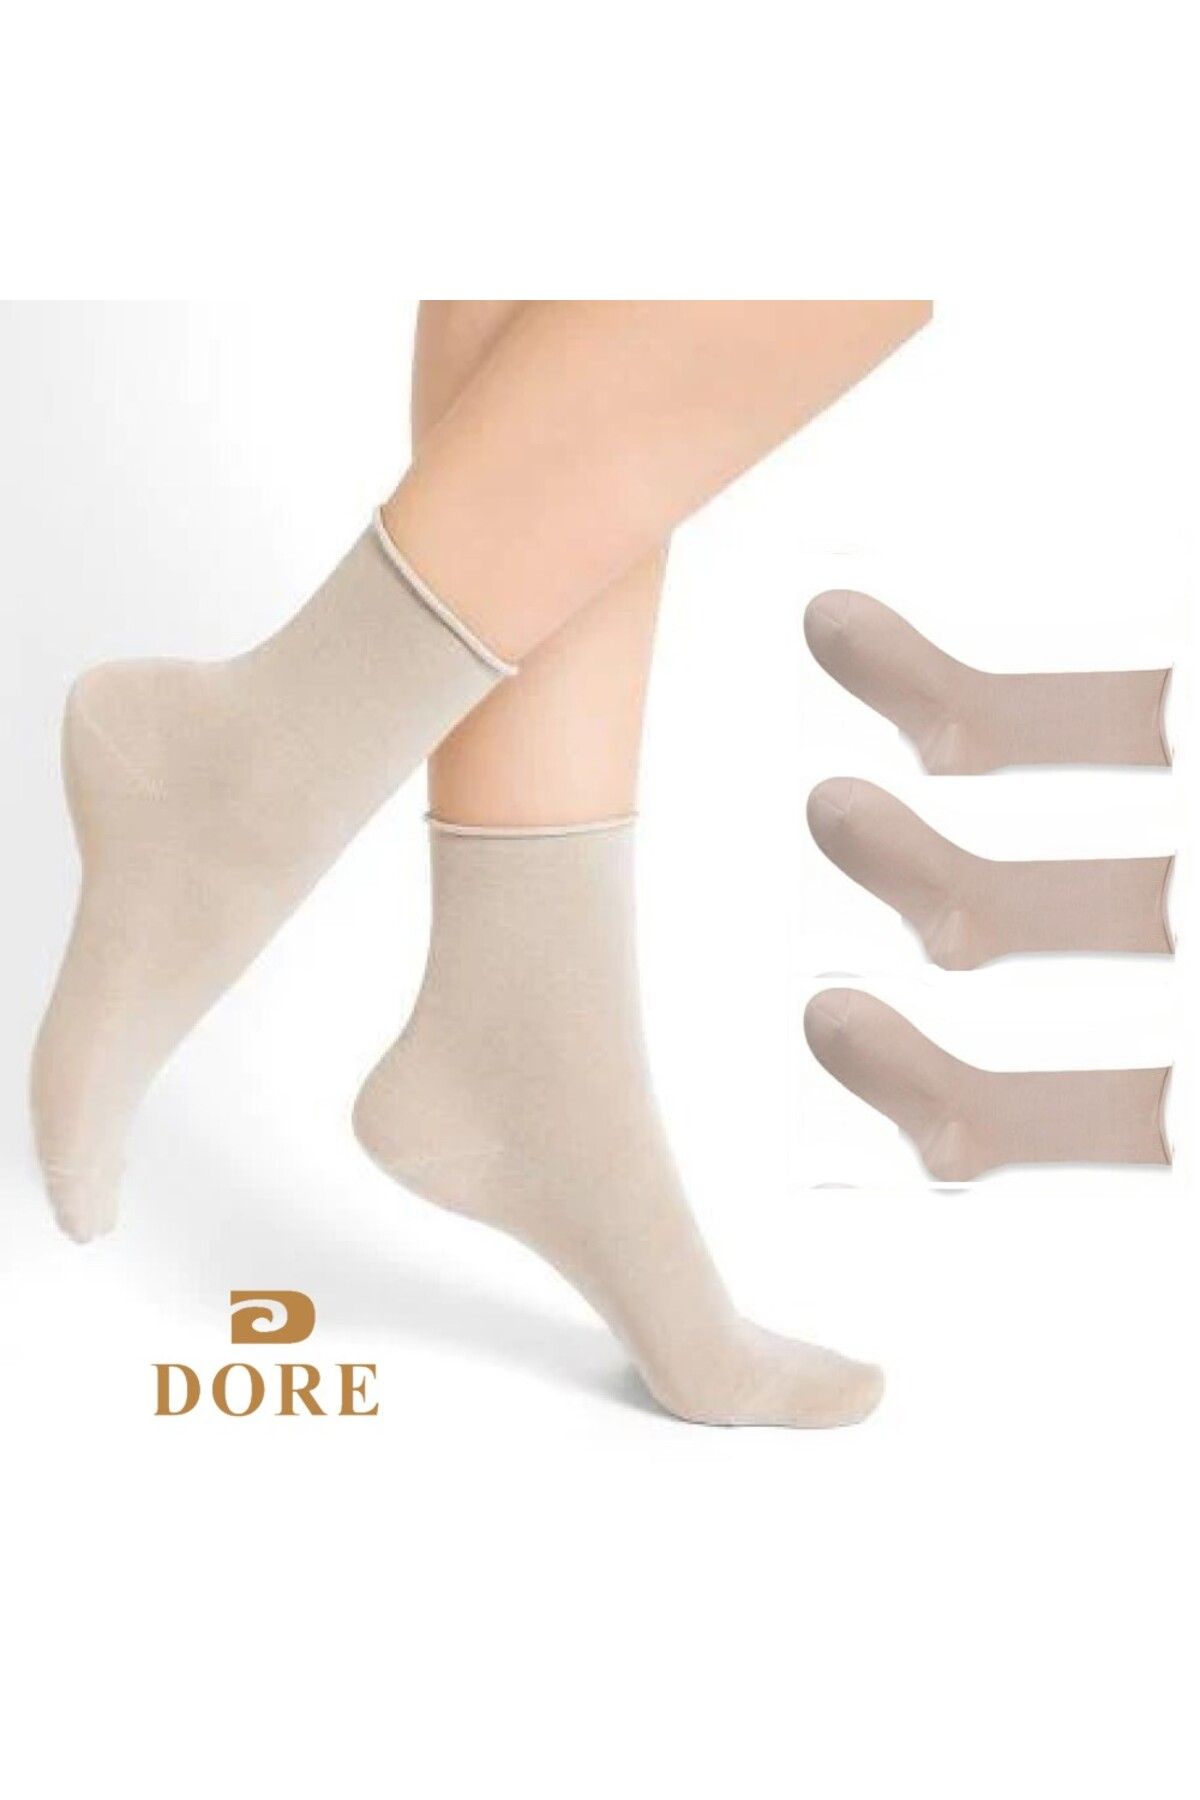 Dore Çorap 3'lü Paket Bej Bambu Lastiksiz Dikişsiz Soket Çorap